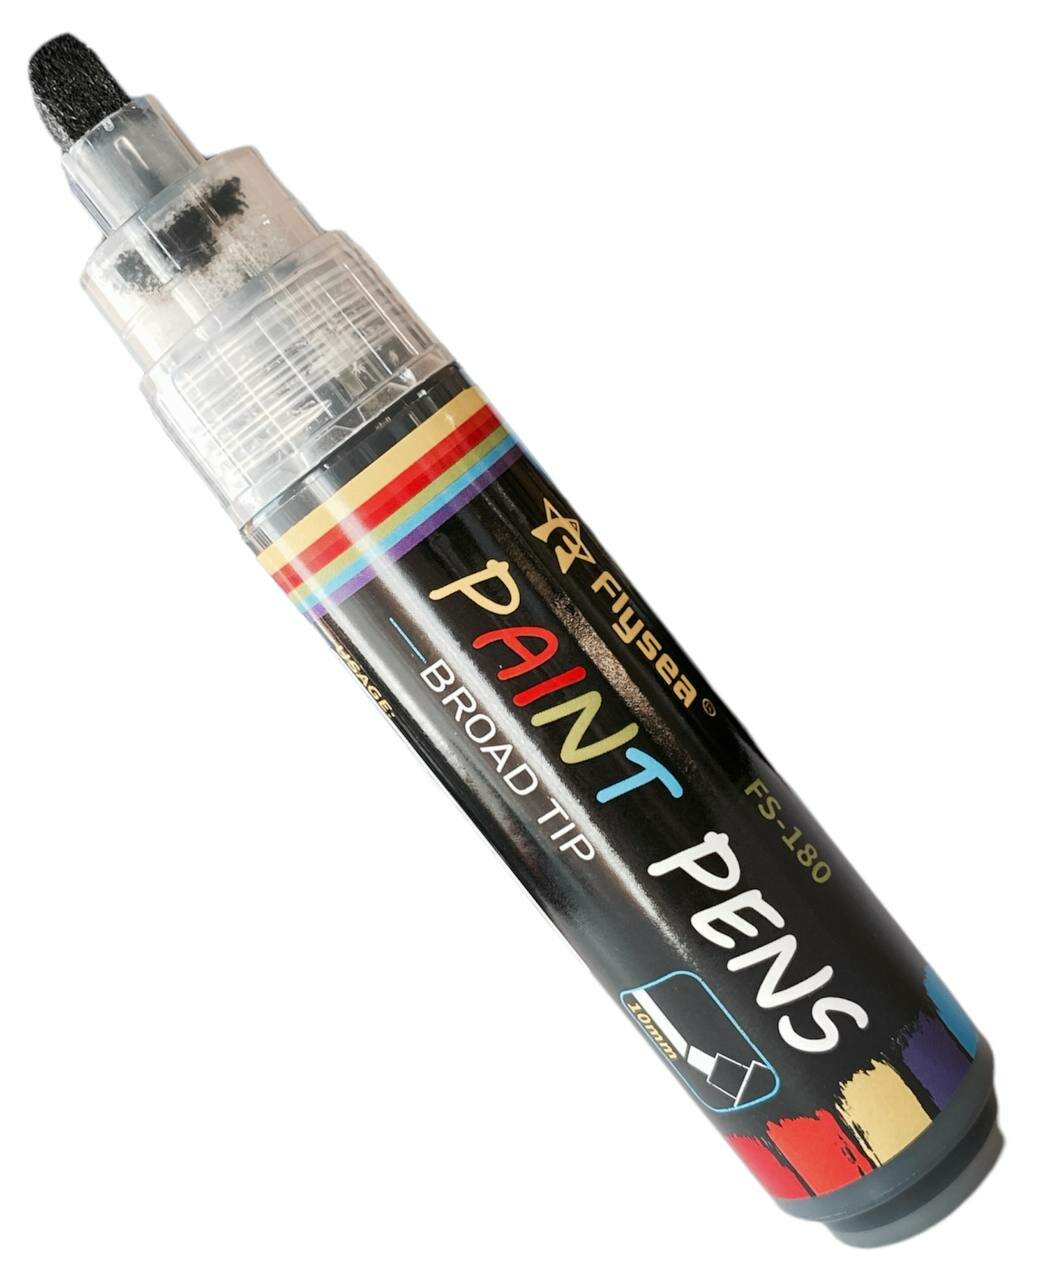 Перманентный помповый маркер с краской архивного качества для граффити, стрит-арта, теггинга, каллиграфии, скетча Flysea FS-180, 10 мм, цвет черный